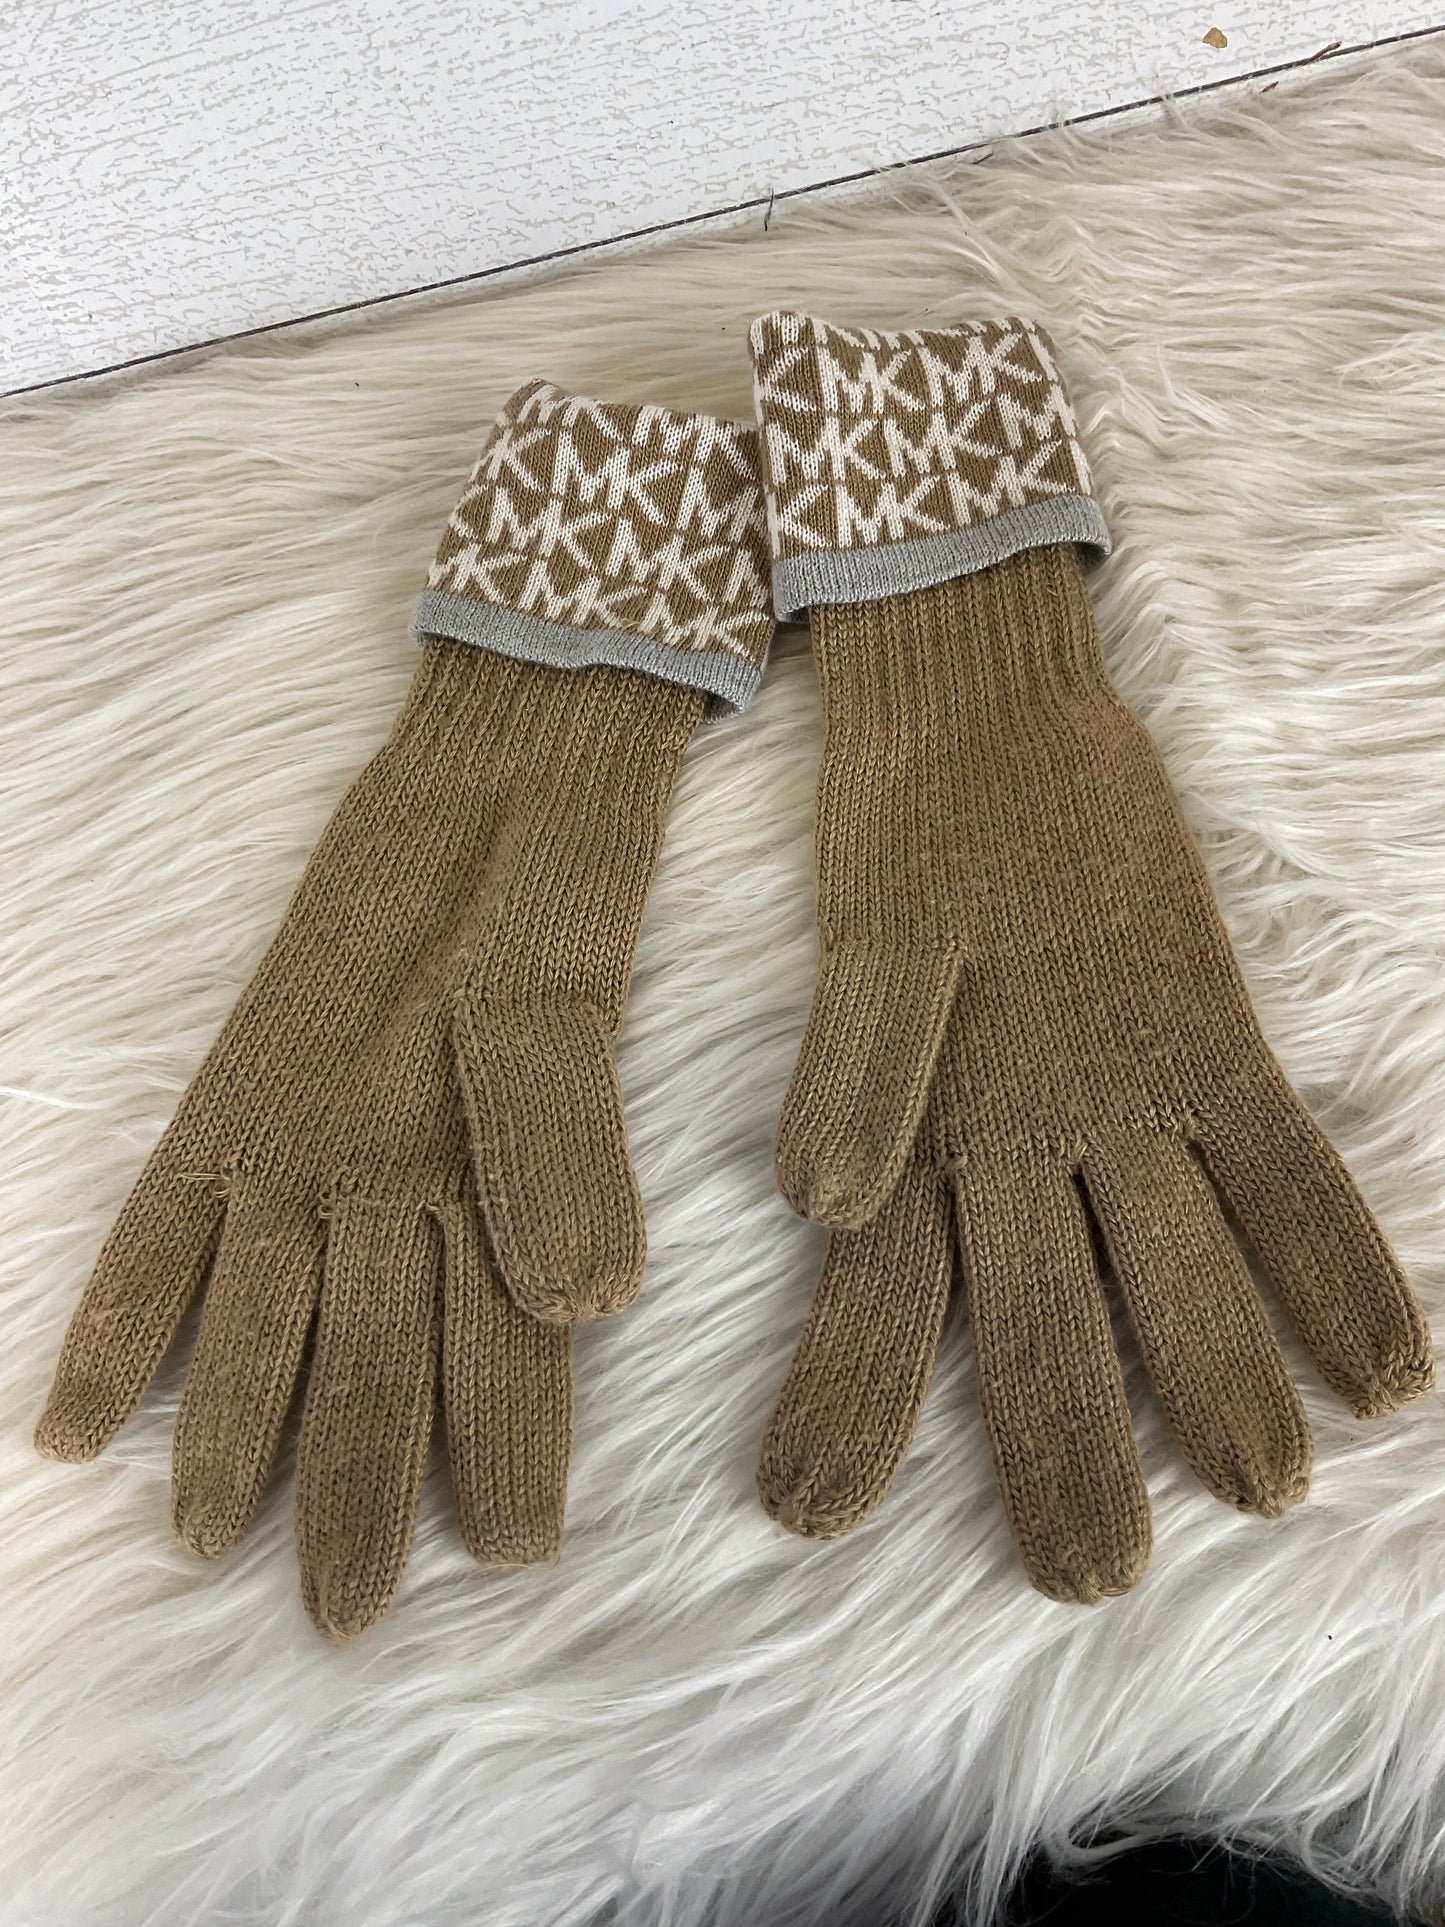 Gloves Designer By Michael Kors